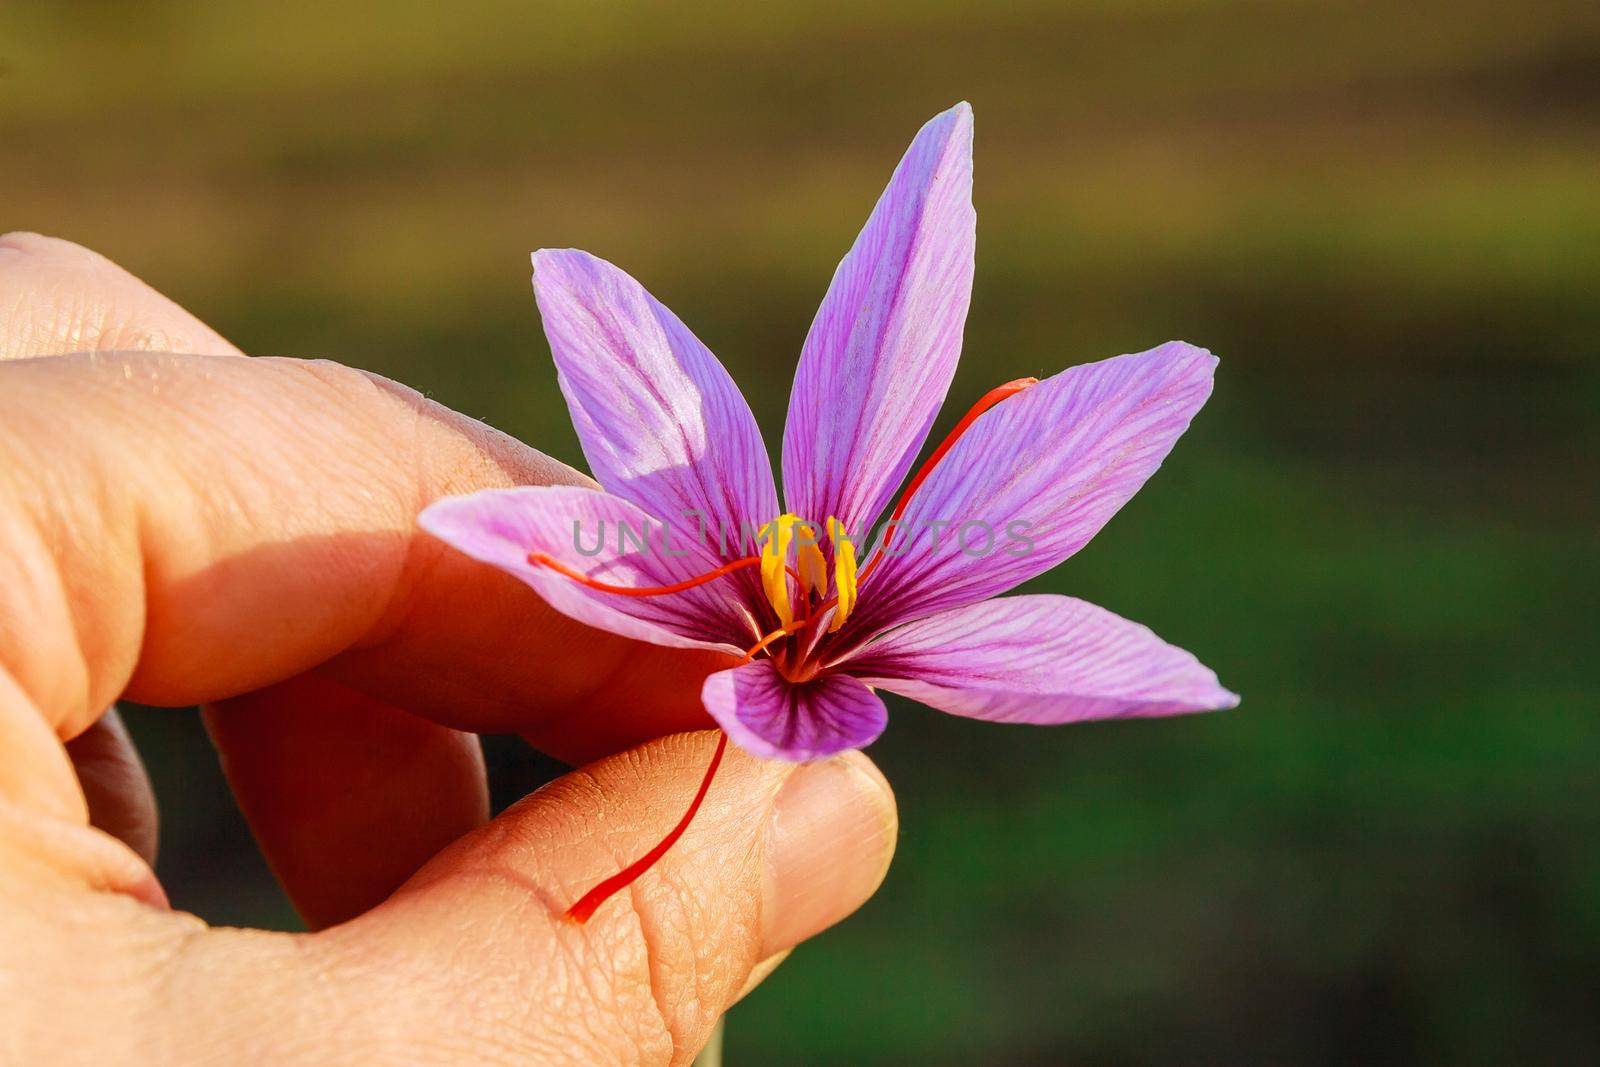 Freshly cut saffron flower in man hand. Purple crocus flower with red stamens.